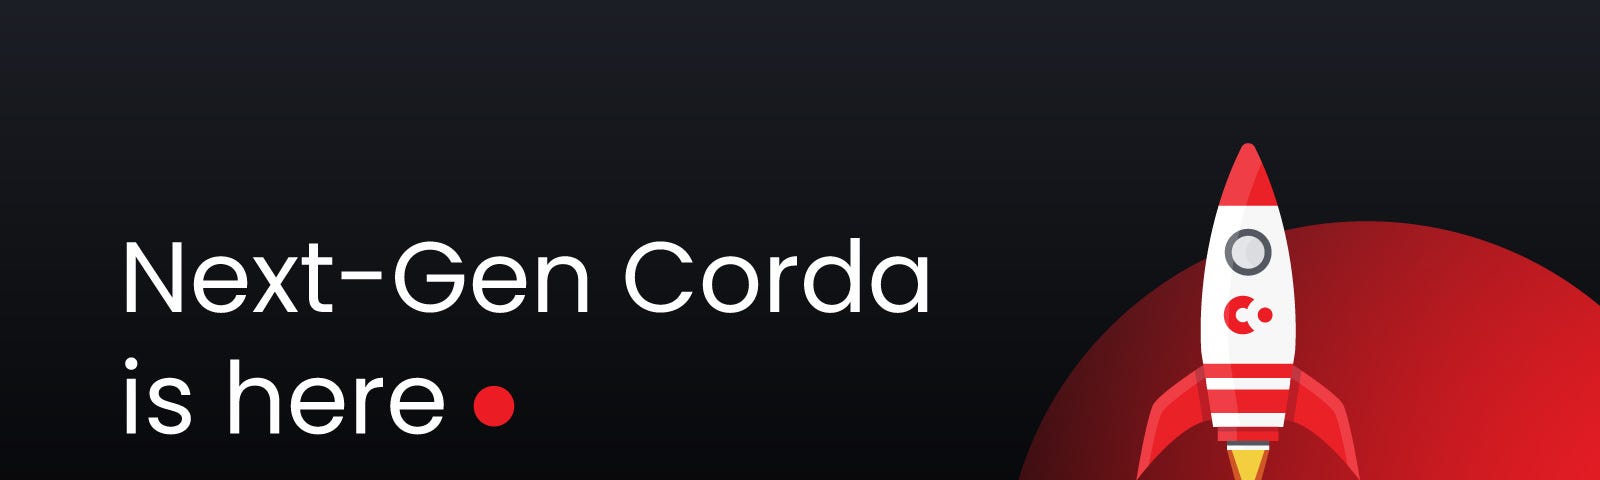 Next-Gen Corda is here